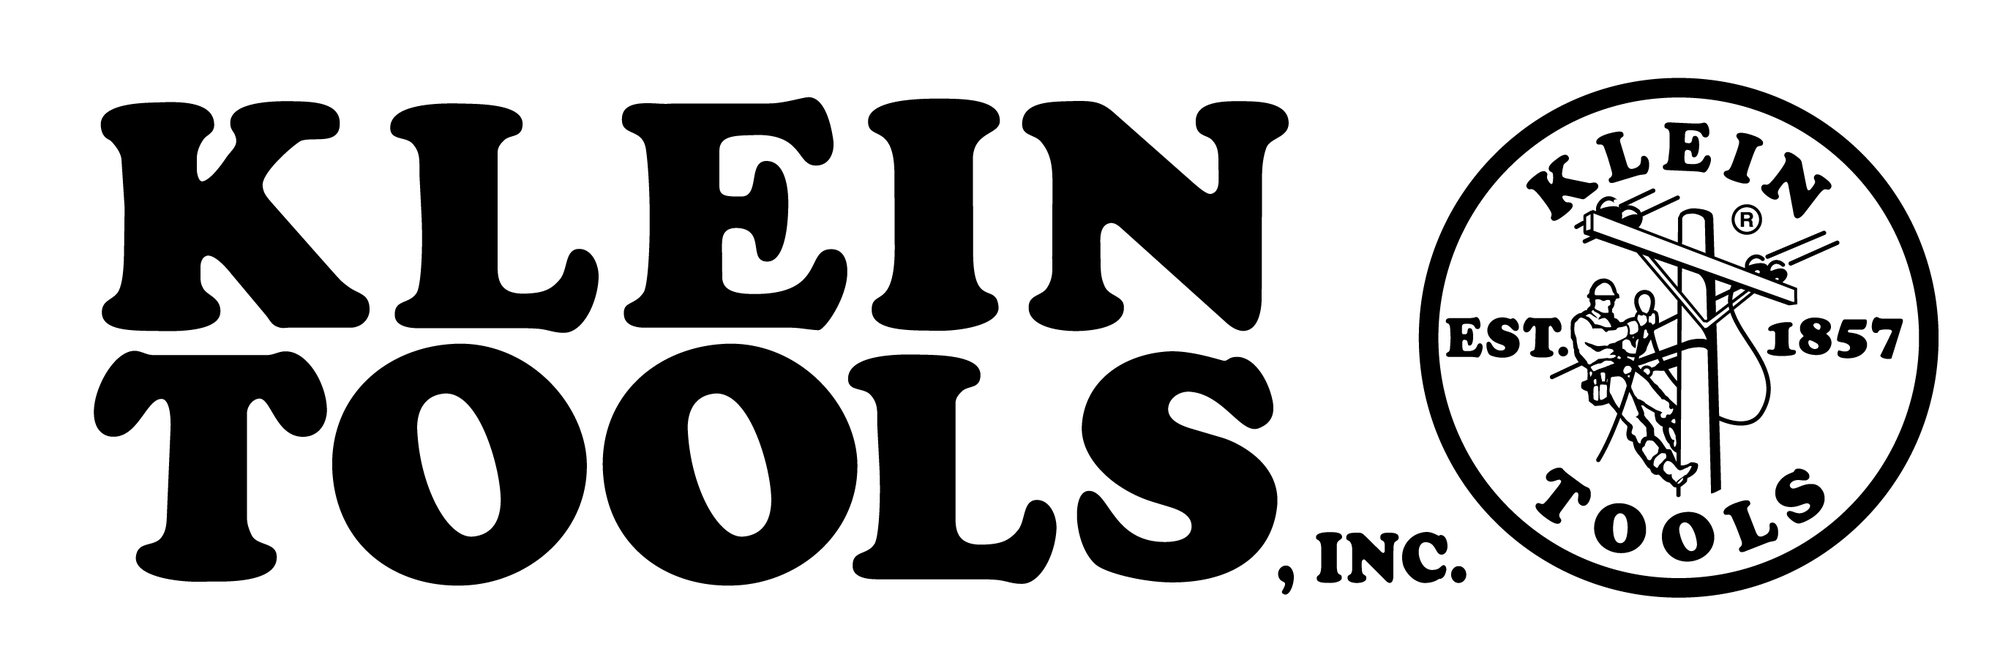 Логотип Klein Tools